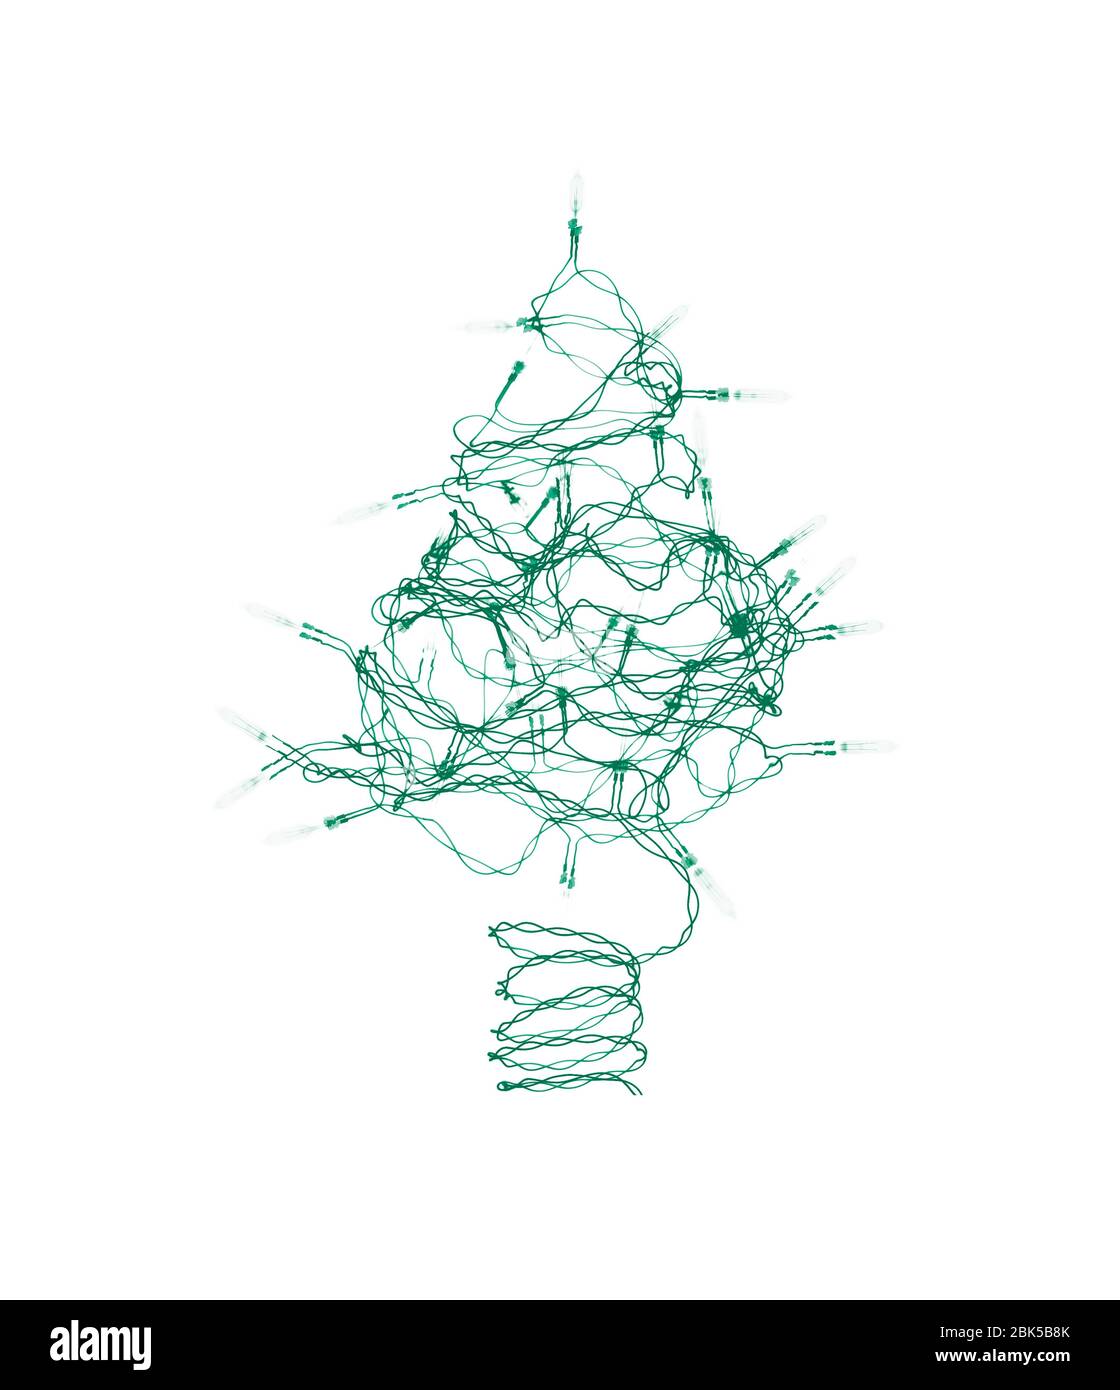 Lumières festives en forme d'arbre, rayons X colorés. Banque D'Images